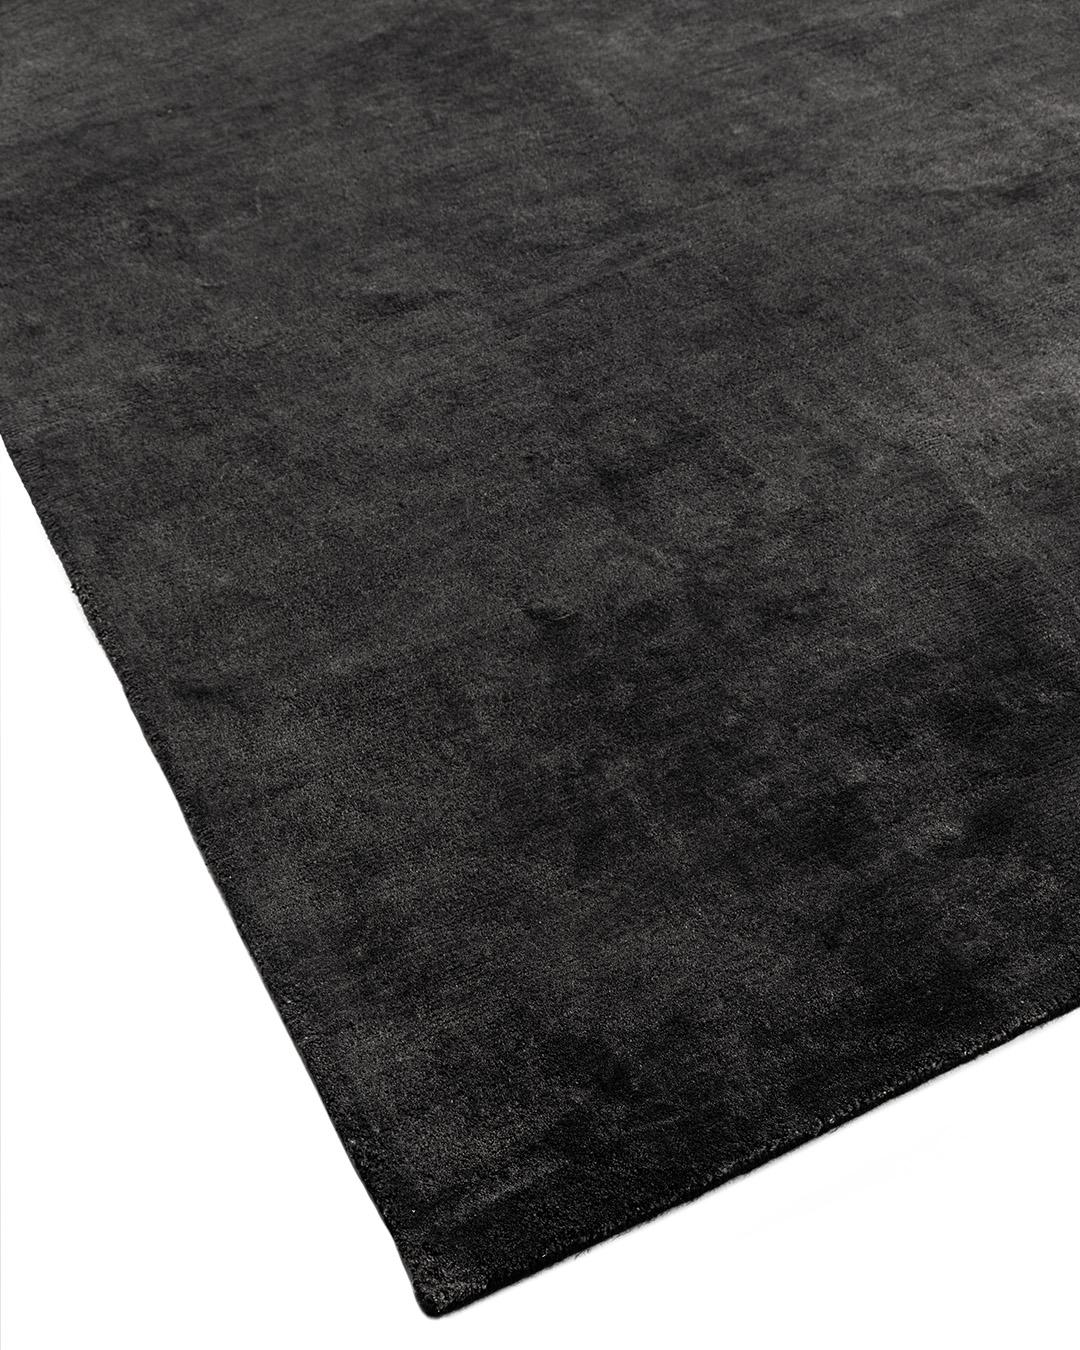 Nouveau tapis solide anthracite noué à la main, mesure 12' x 15'. Un tapis en lin noué à la main, luxueux, simple et lustré, qui donnera une impression générale de calme et de design.